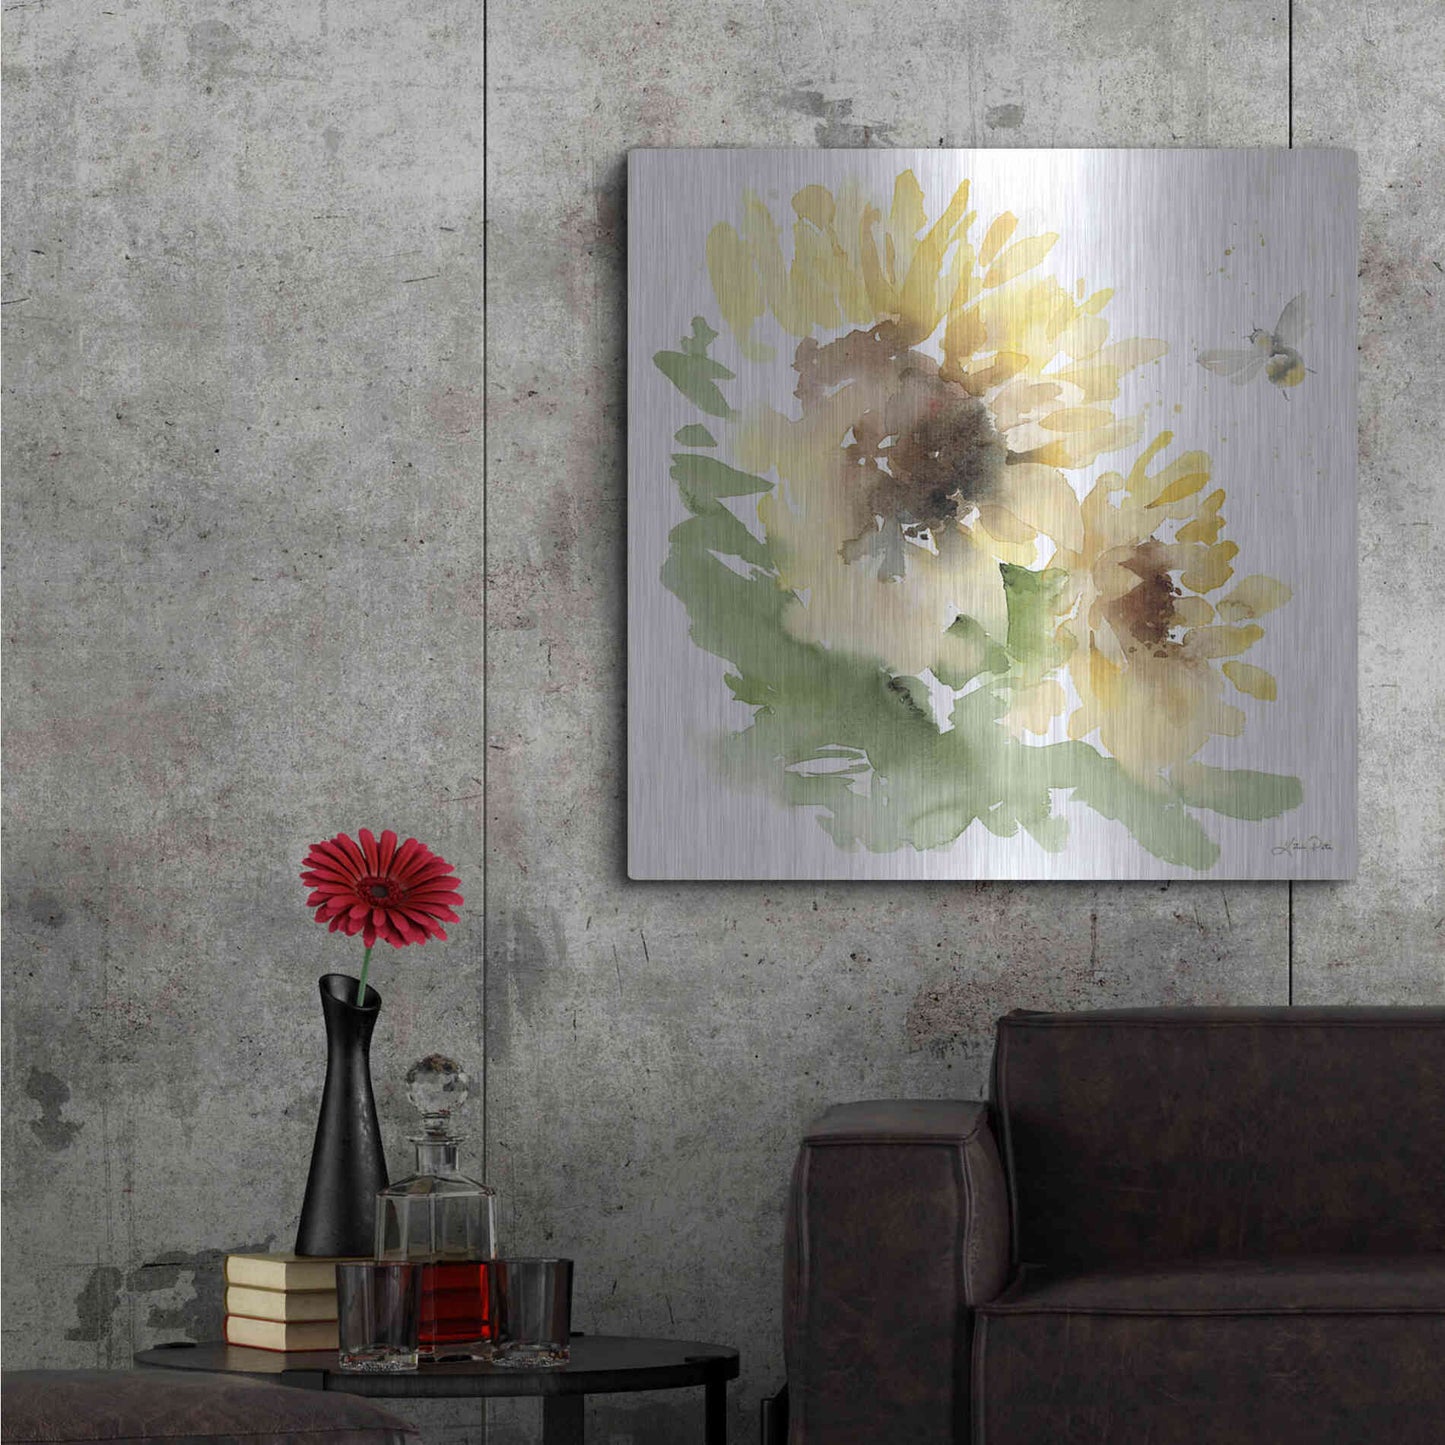 Luxe Metal Art 'Sunflower Meadow II' by Katrina Pete, Metal Wall Art,36x36